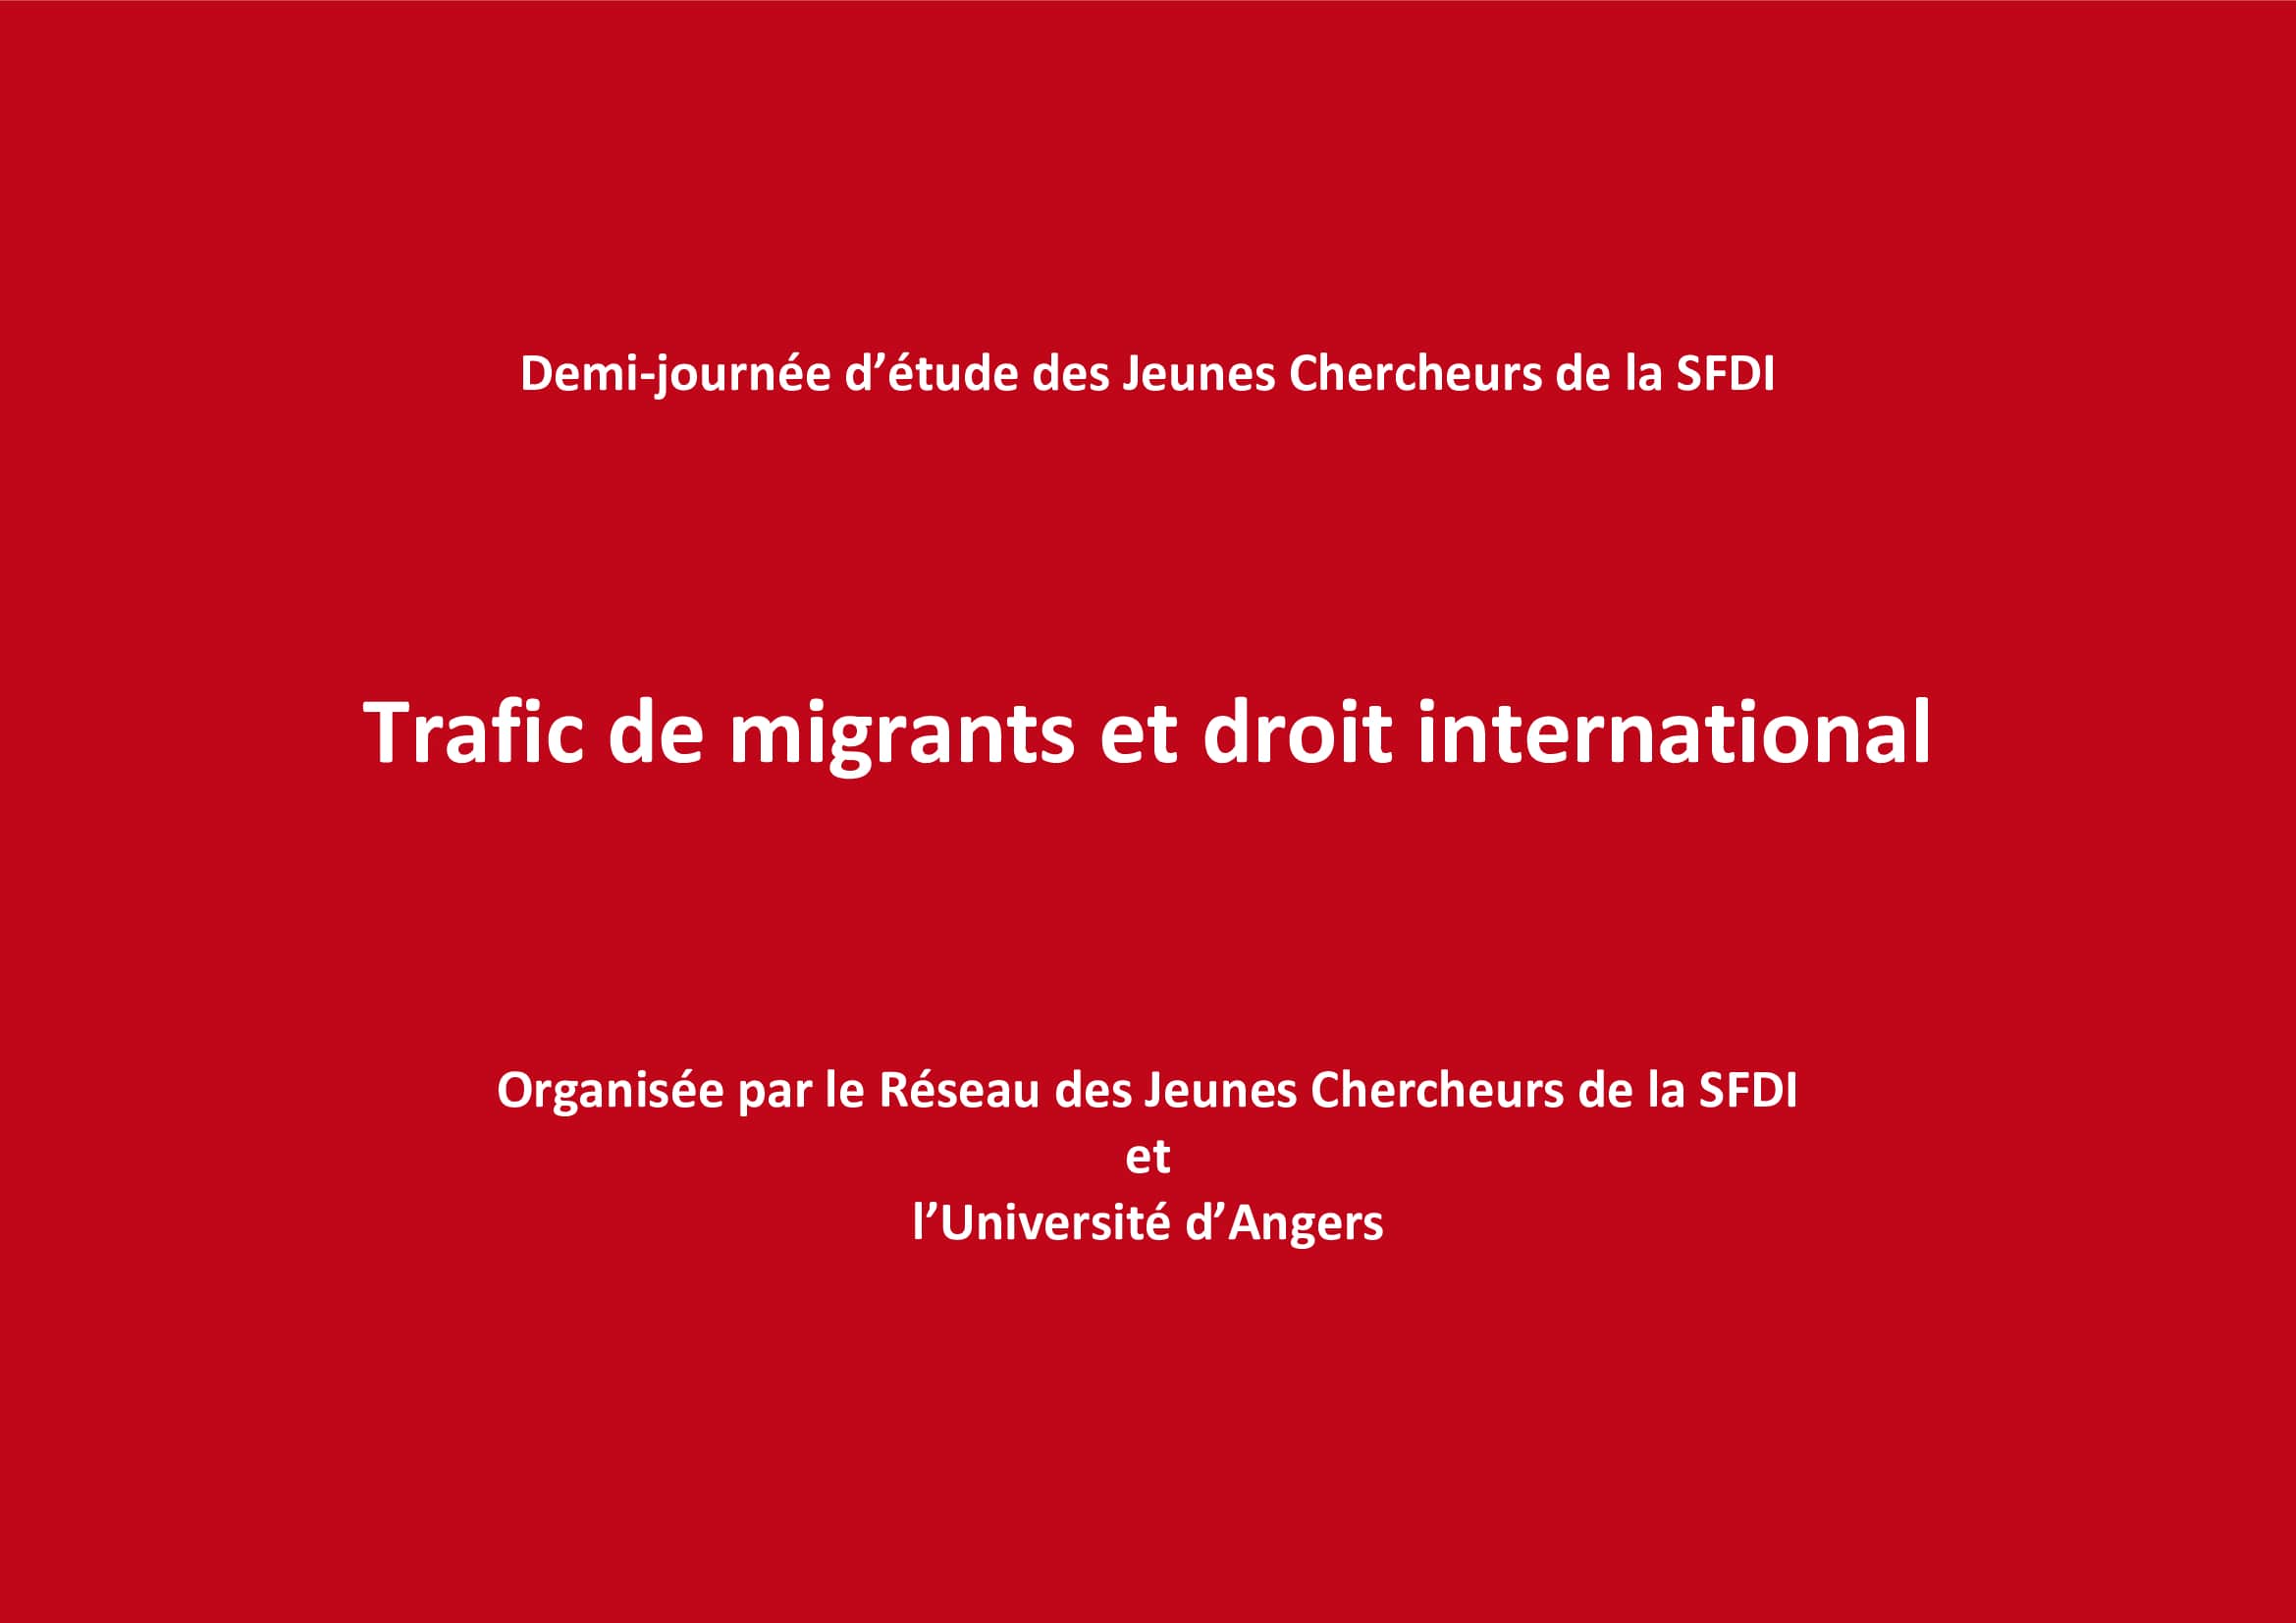 Les difficultés de la mise en œuvre des obligations internationales en matière de lutte contre le trafic de migrants au Mali, par J. Antouly